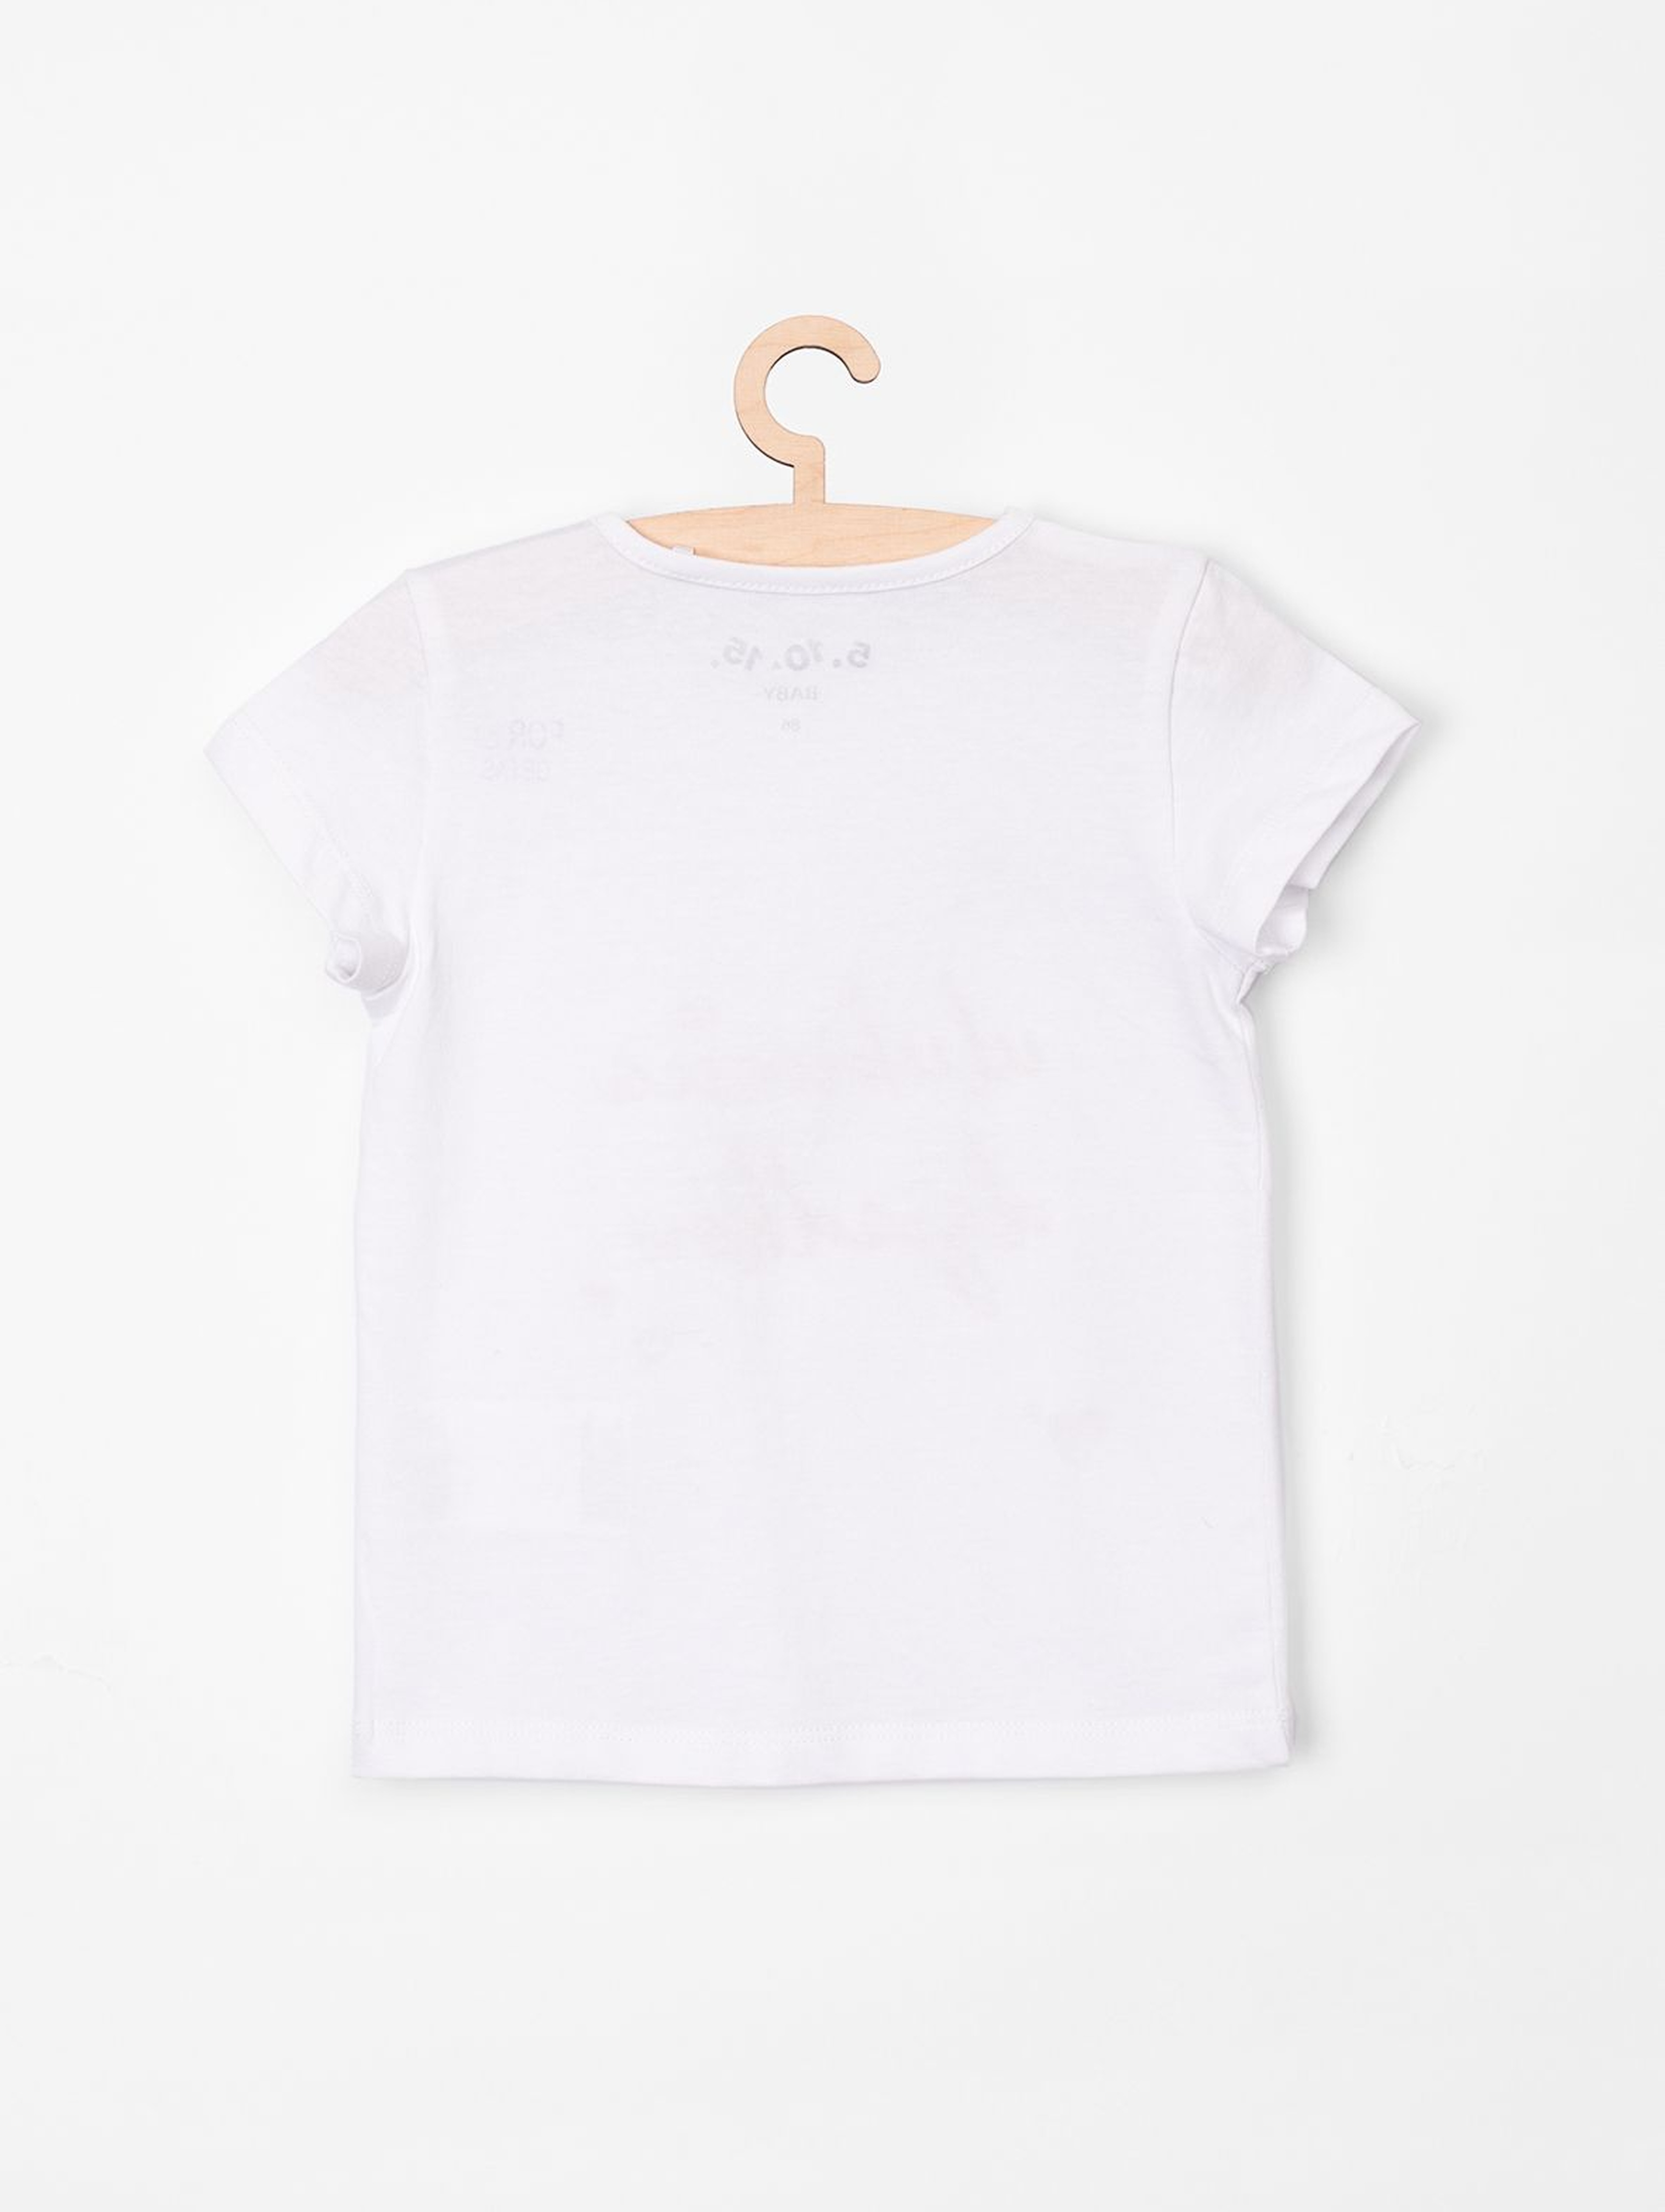 T-shirt niemowlęcy biały z napisem Ulubienica Dziadków